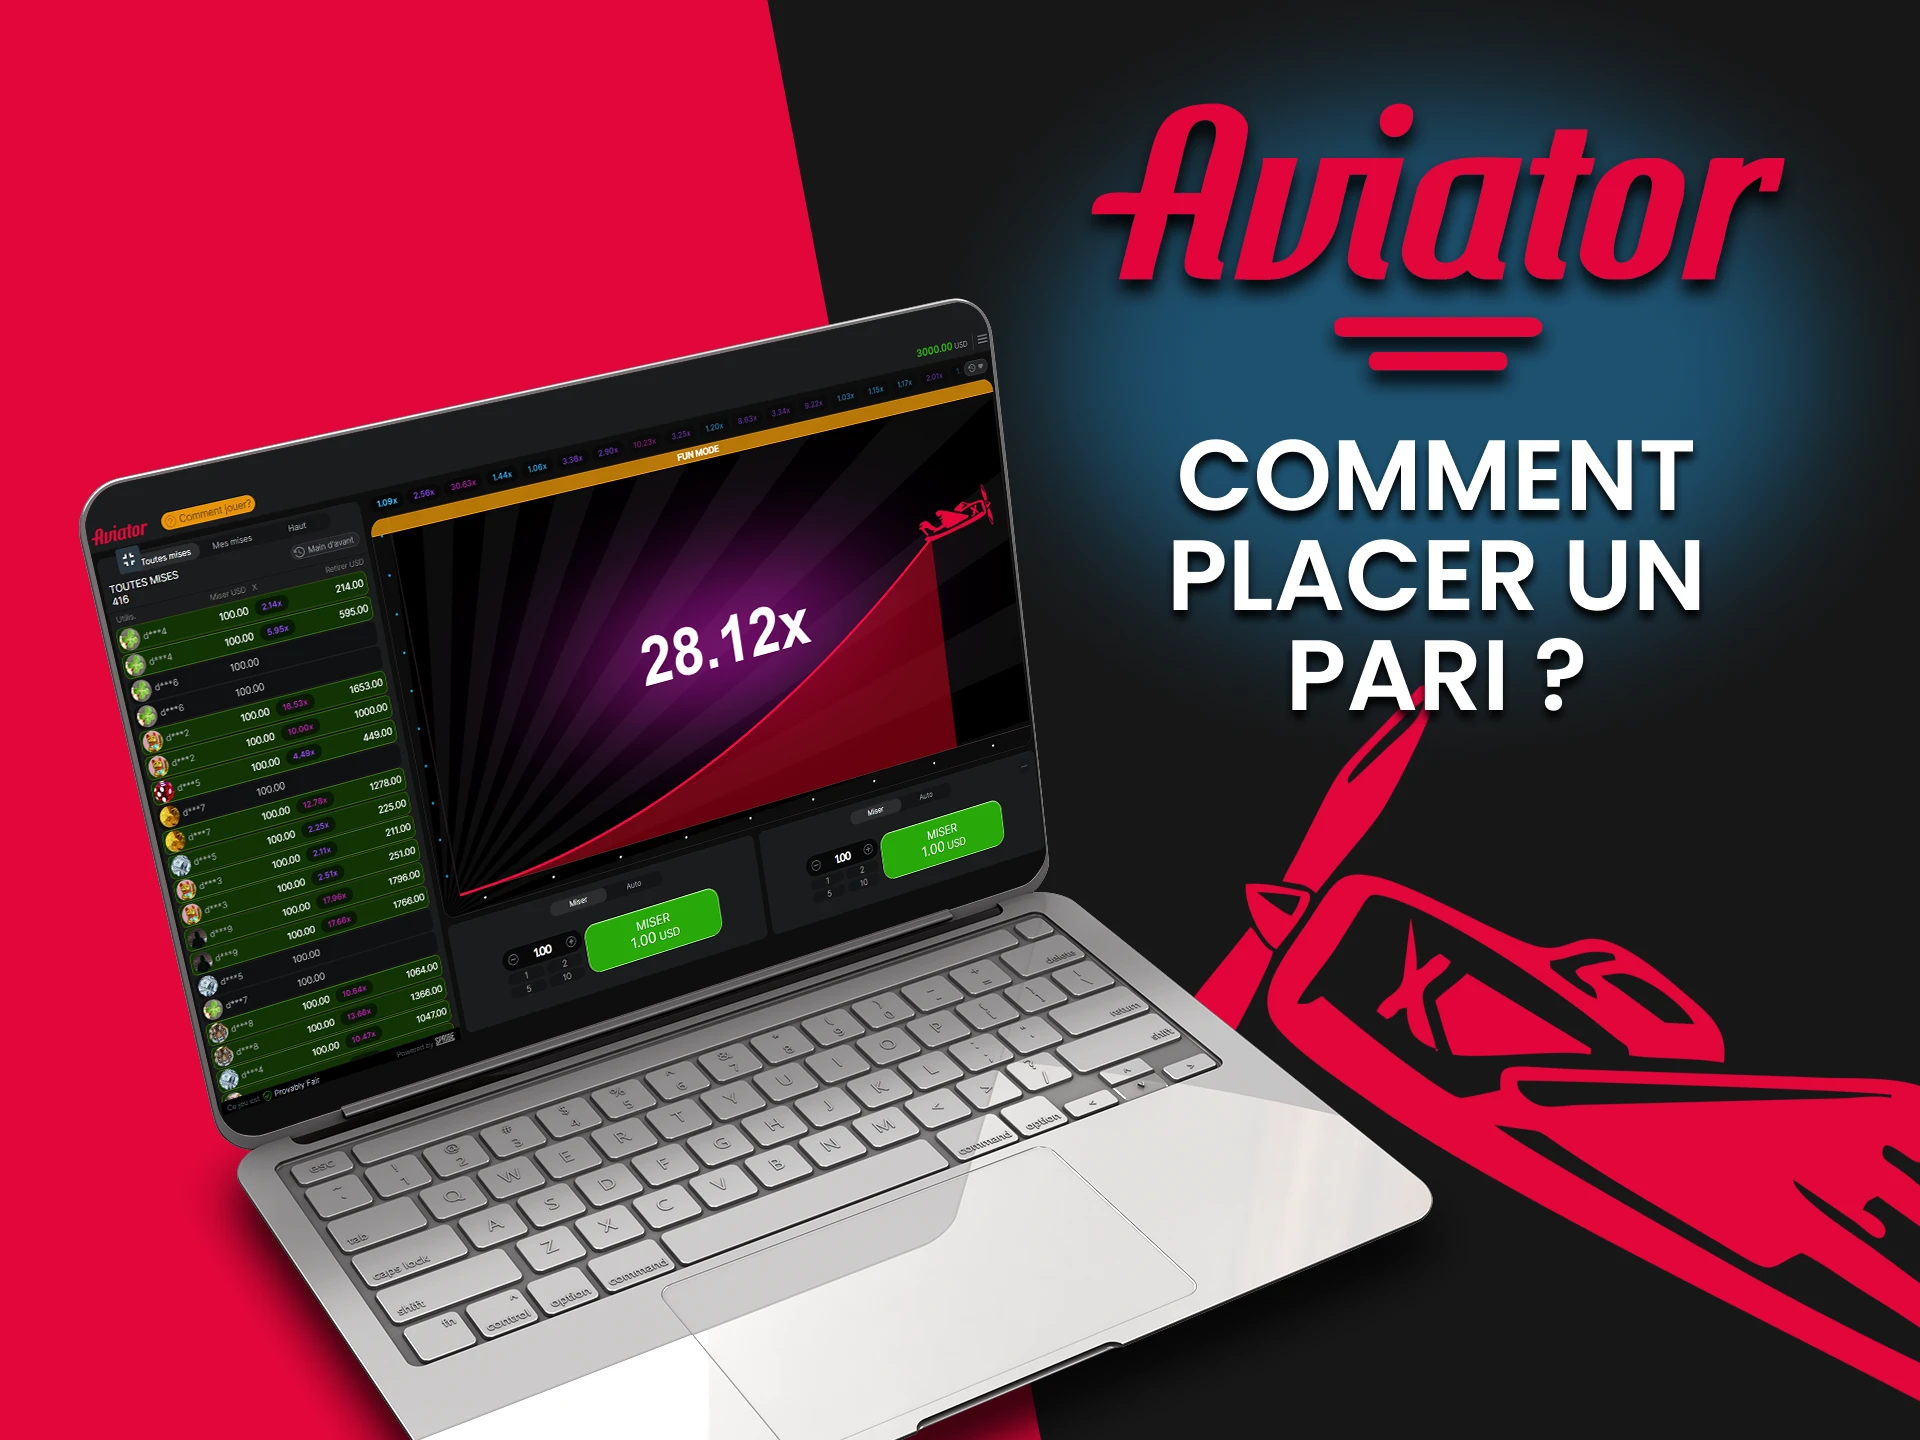 Nous vous expliquerons comment commencer à parier dans le jeu Aviator.